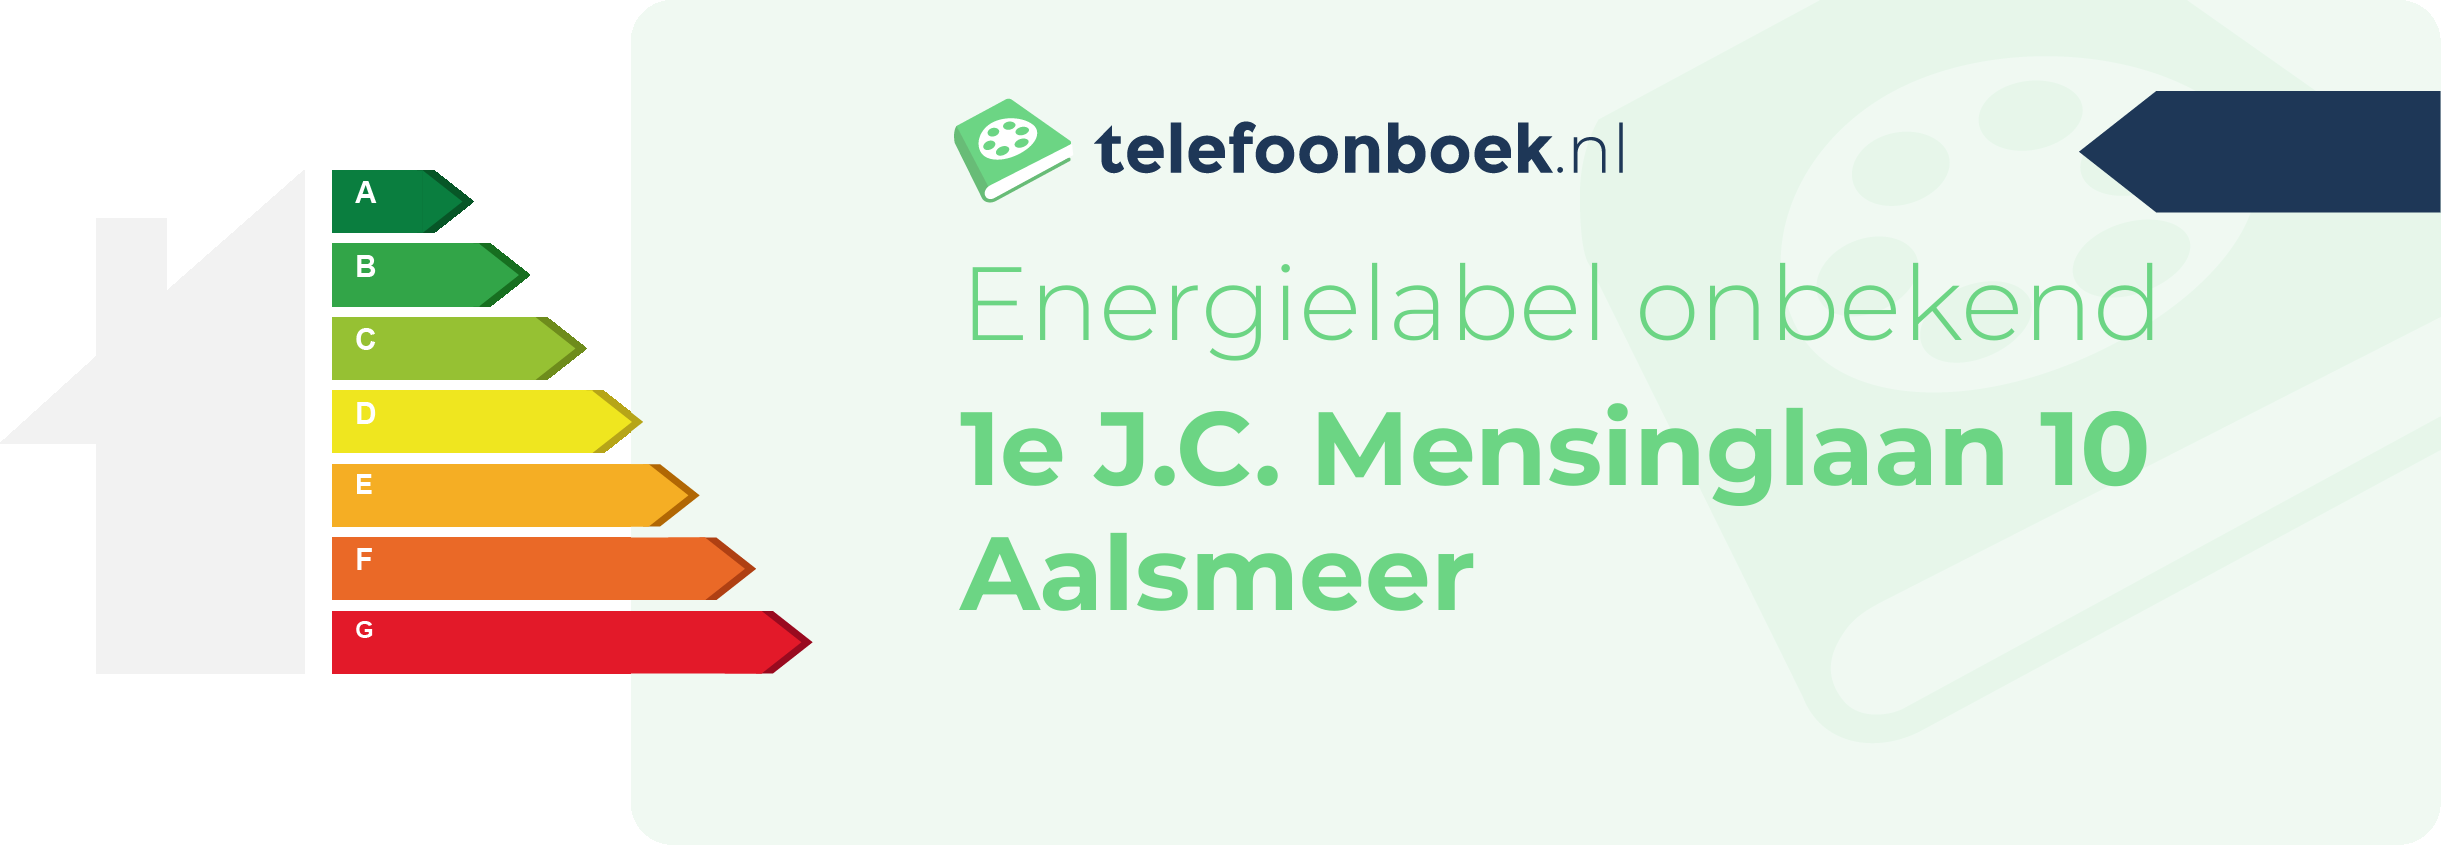 Energielabel 1e J.C. Mensinglaan 10 Aalsmeer